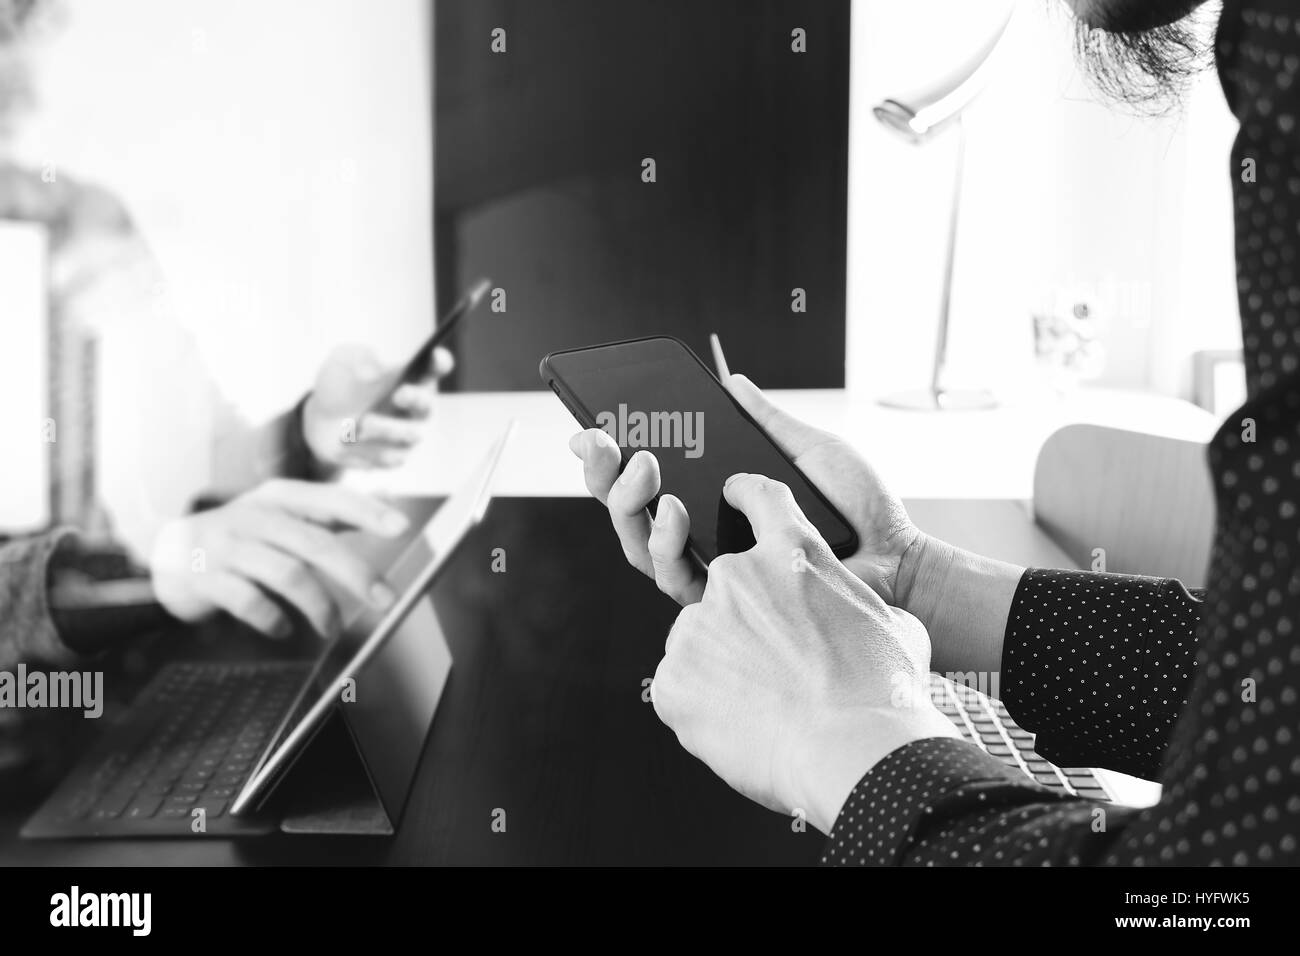 La réunion de l'équipe de travail concept,businessman using smart phone et tablette numérique et votre ordinateur de bureau moderne en noir et blanc, Banque D'Images